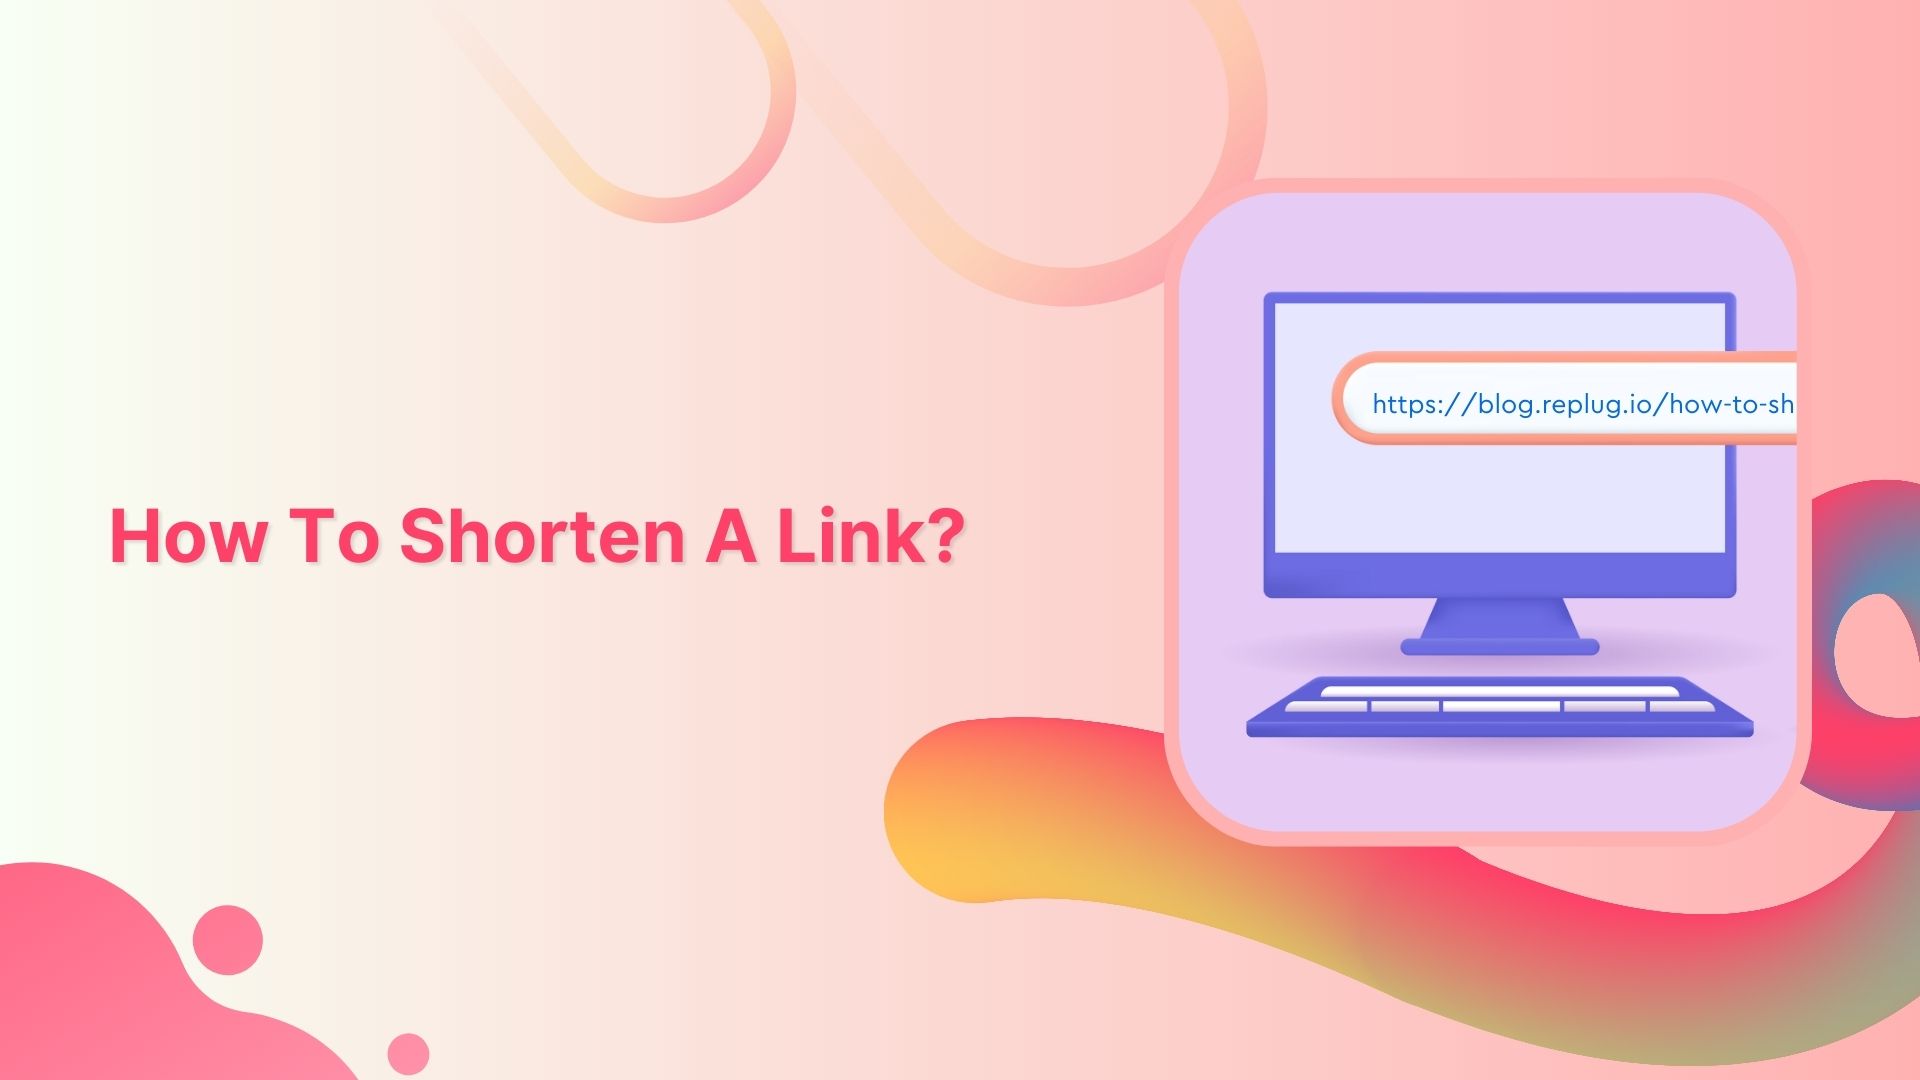 How to shorten a link